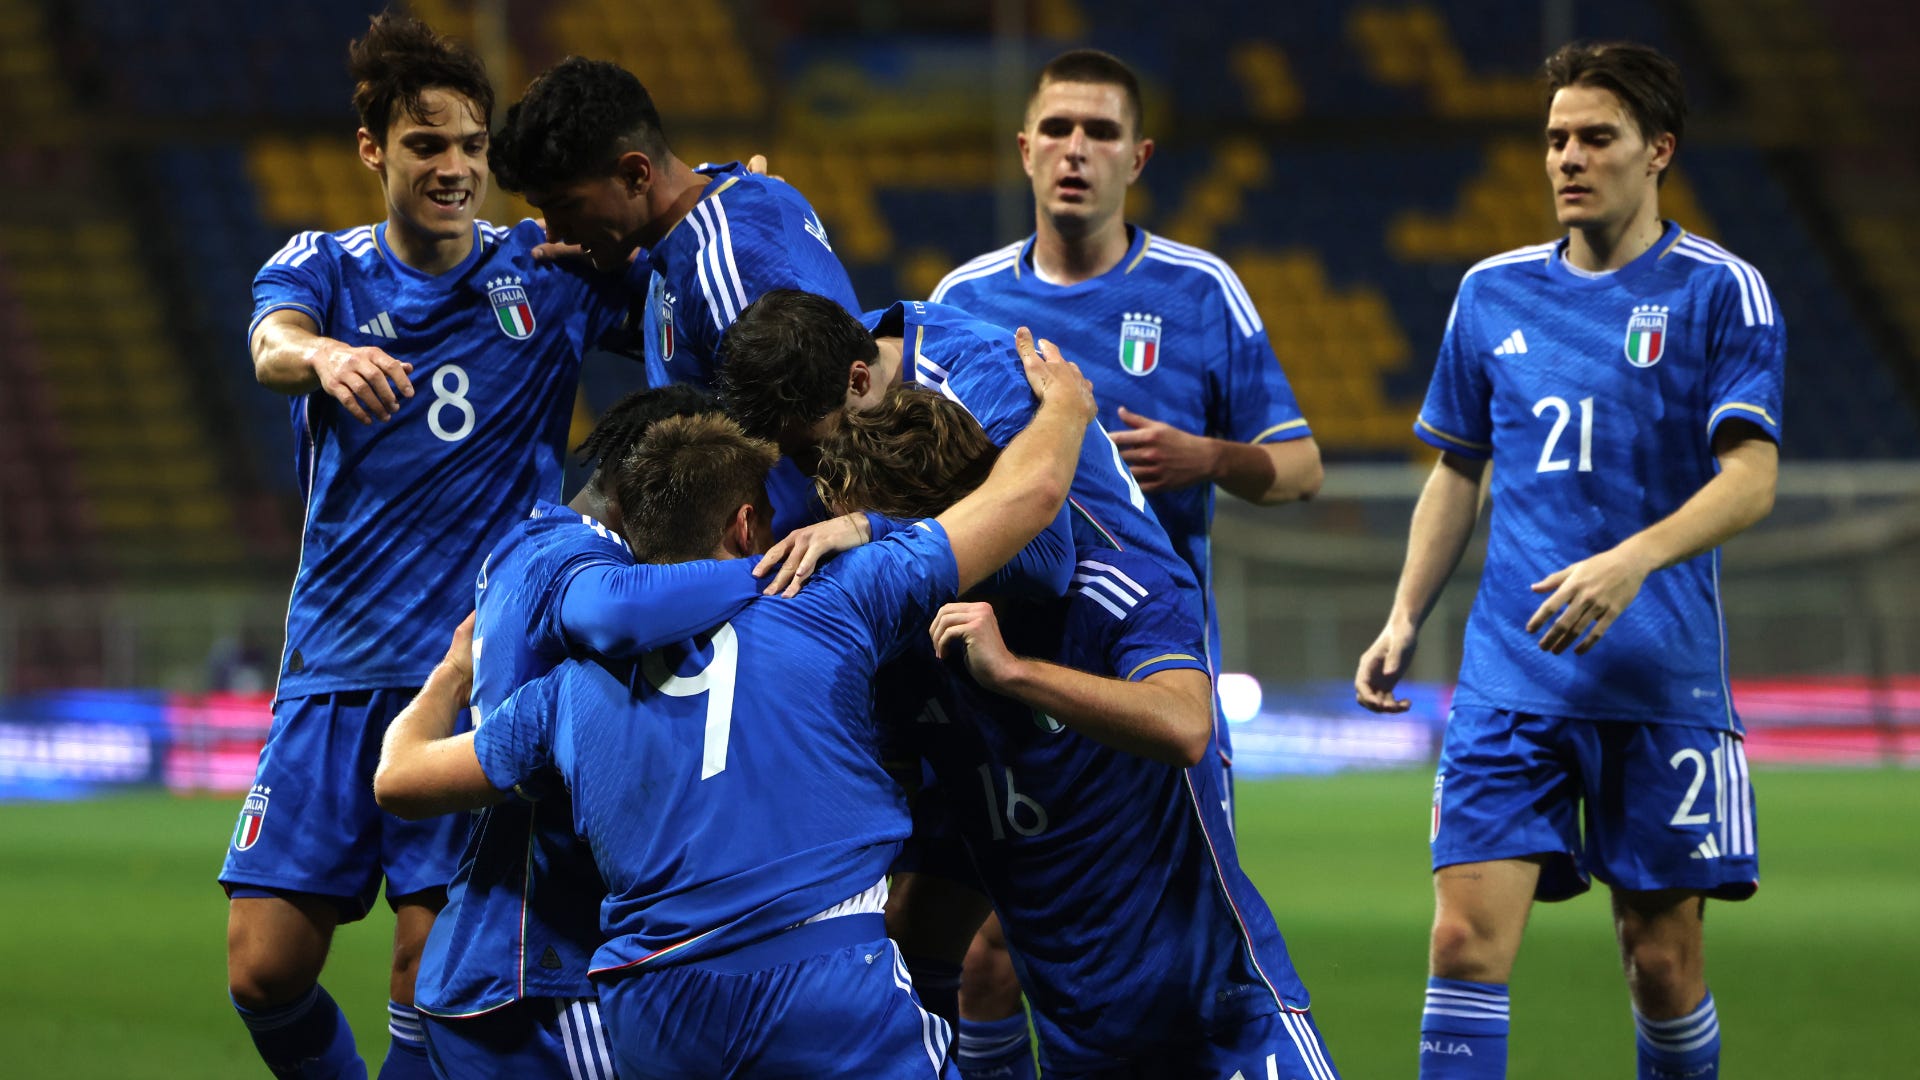 Italia contro  Norvegia: Campionato Europeo U21 in diretta streaming e TV oggi